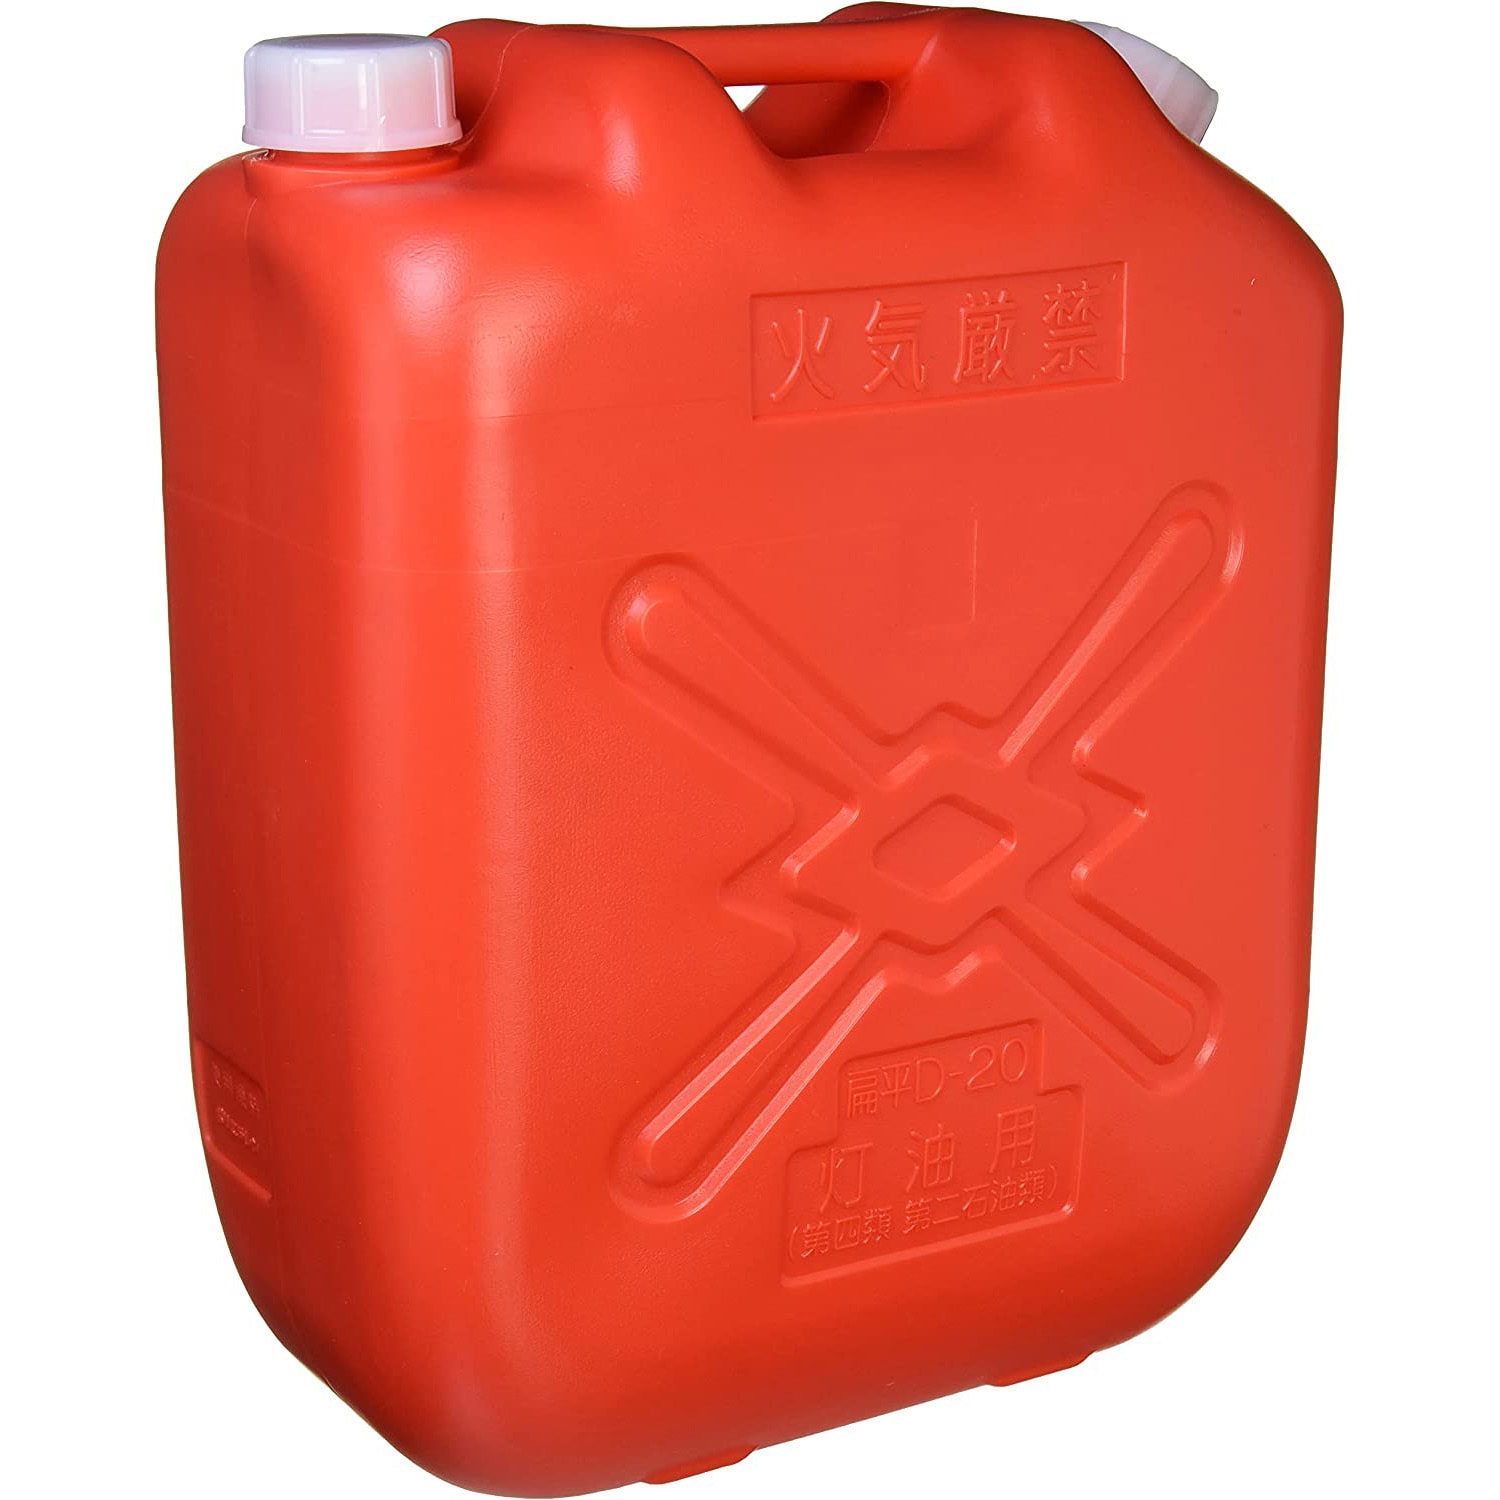 品質が完璧 北陸土井工業 ポリ軽油缶 20L 消防法適合品